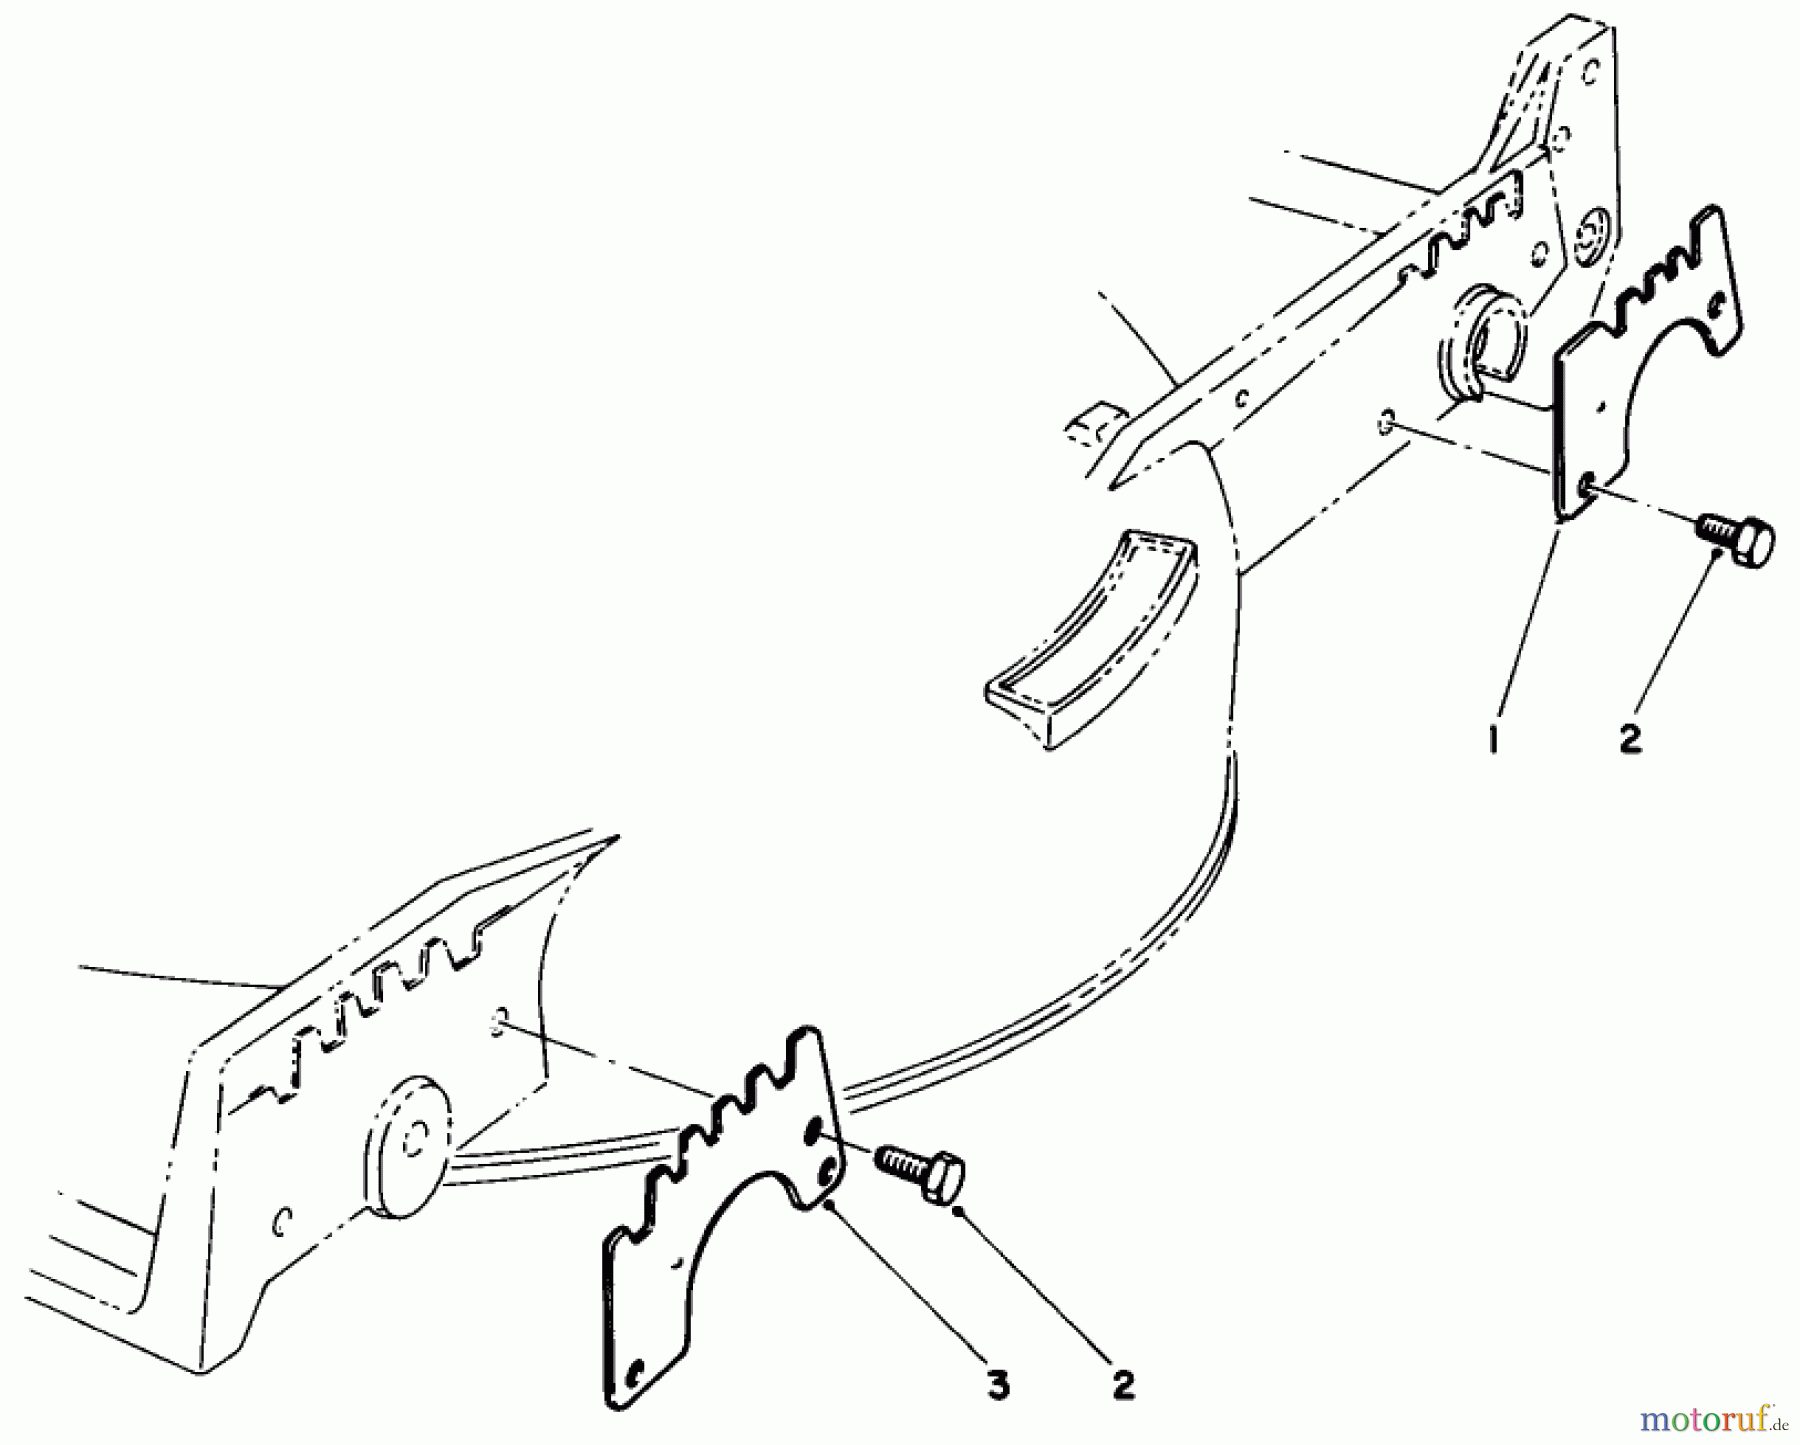  Toro Neu Mowers, Walk-Behind Seite 1 20320 - Toro Lawnmower, 1992 (2000001-2999999) WEAR PLATE MODEL NO. 49-4080 (OPTIONAL)